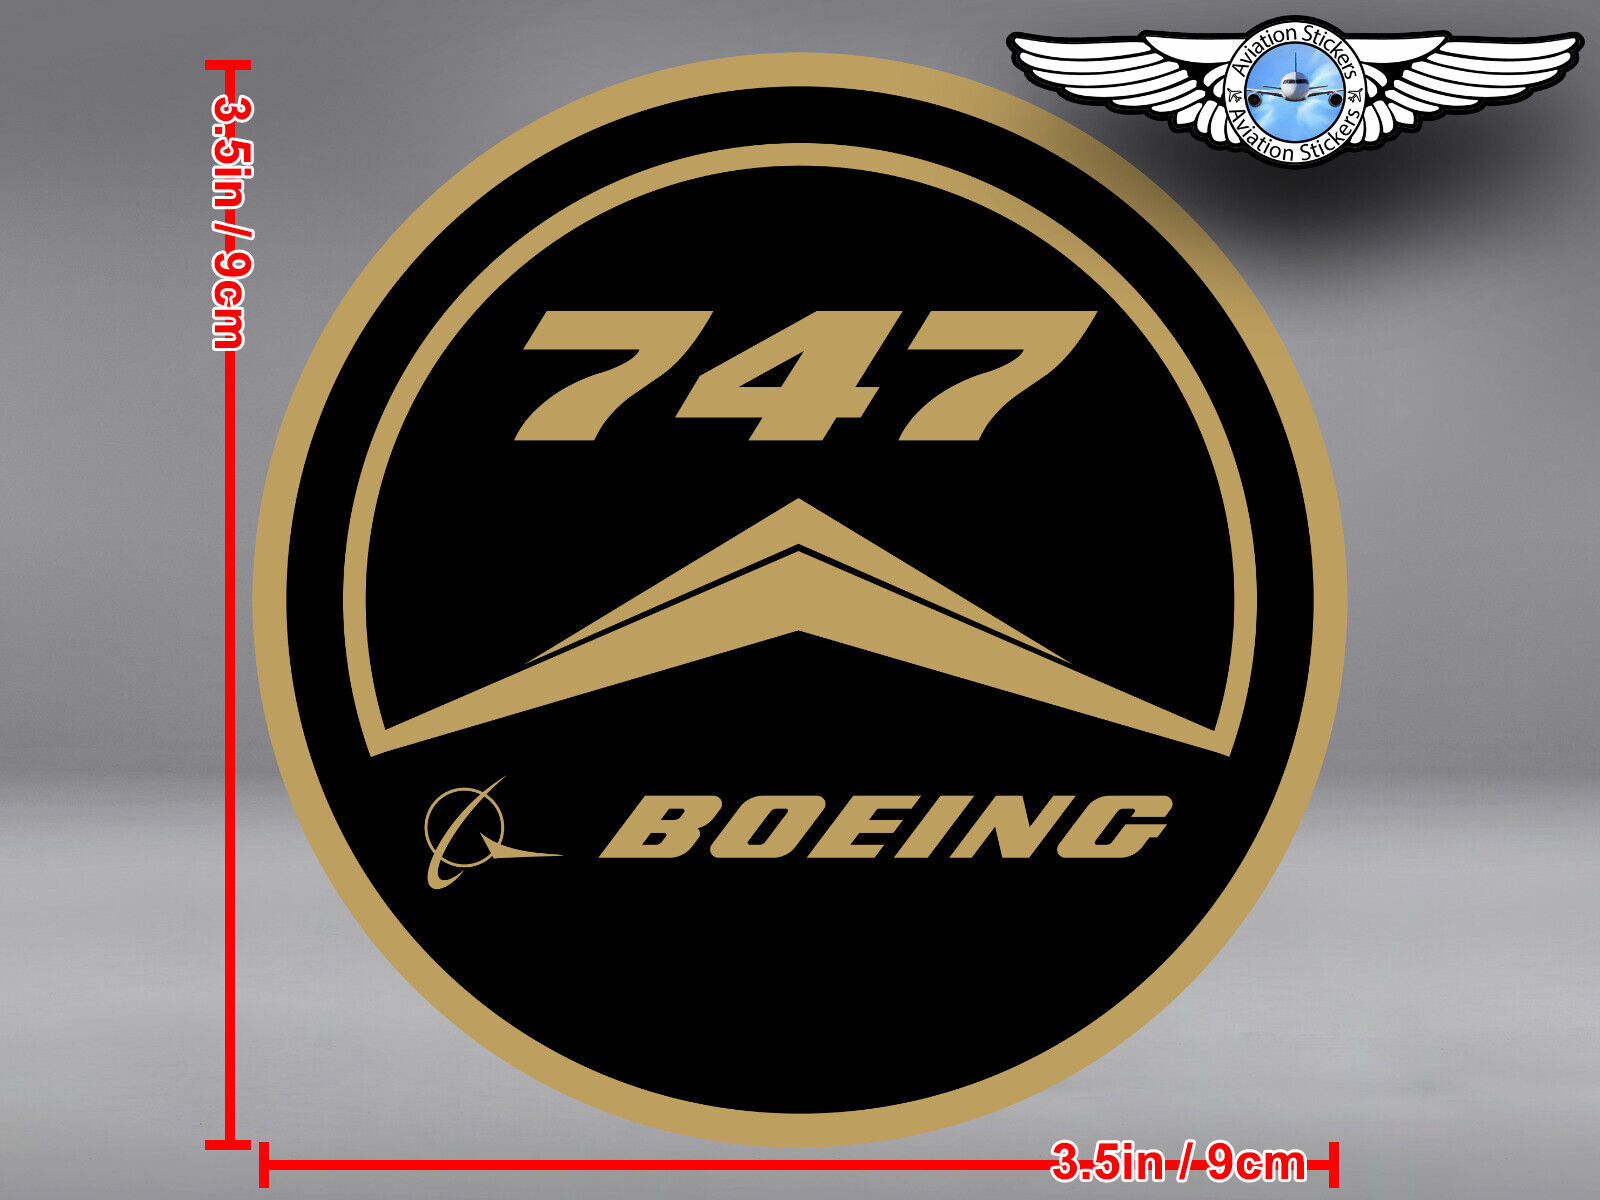 OLD VINTAGE STYLE ROUND BOEING B 747 B747 LOGO DECAL / STICKER